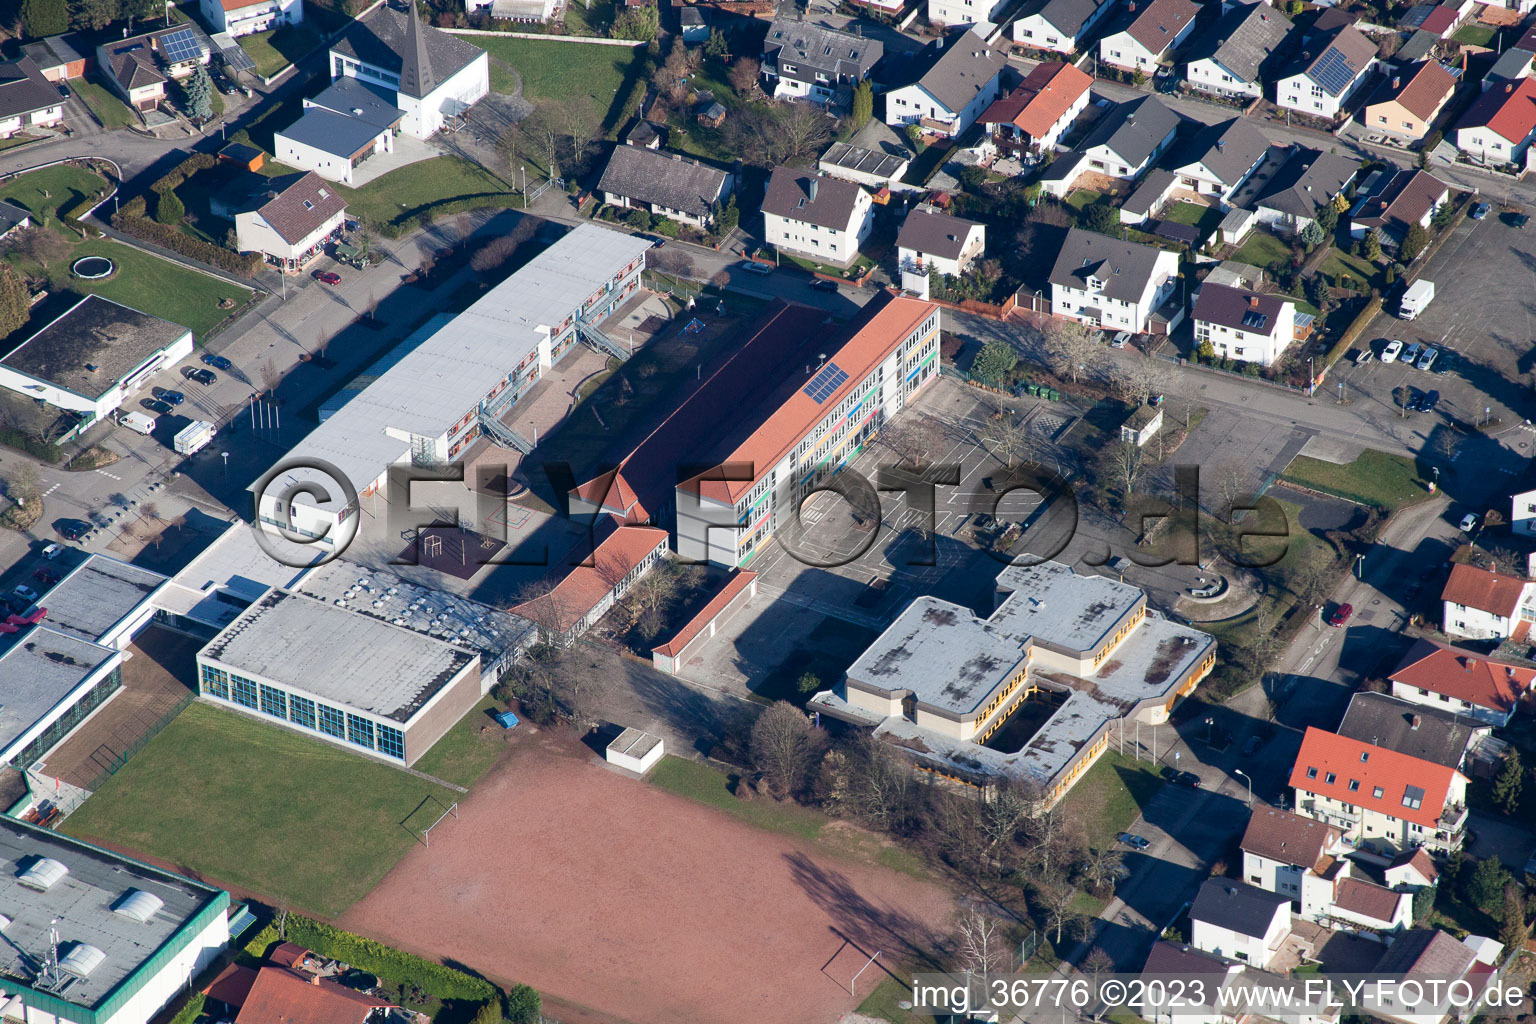 Lingenfeld im Bundesland Rheinland-Pfalz, Deutschland aus der Drohnenperspektive